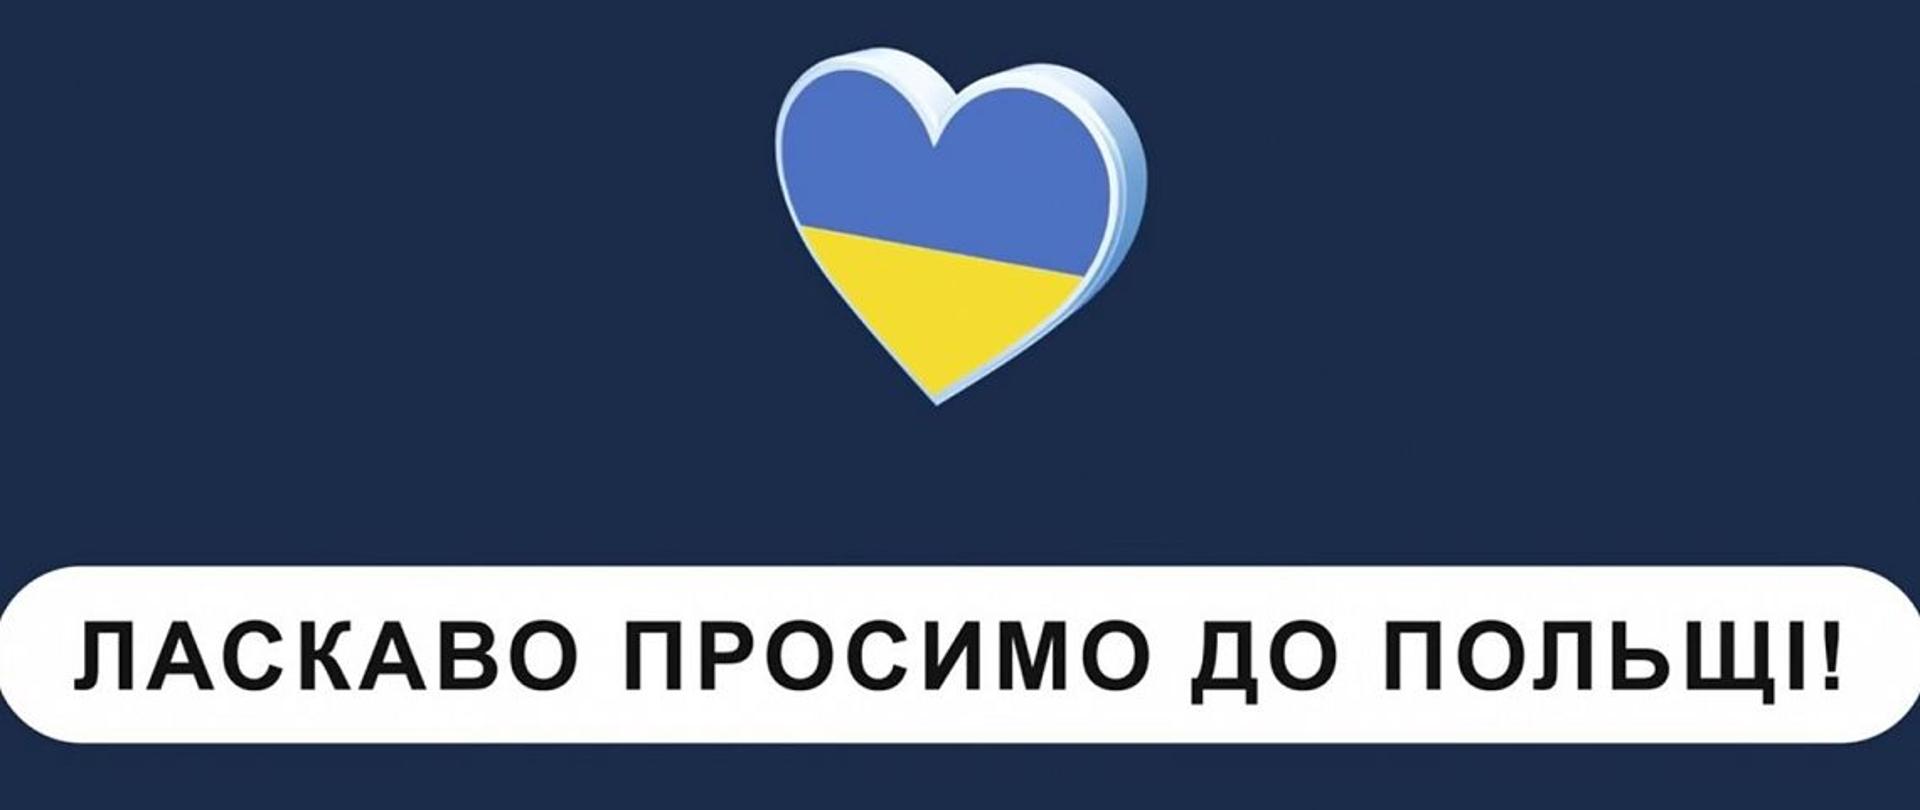 PESEL, Profil Zaufany i aplikacja mObywatel dla obywateli Ukrainy